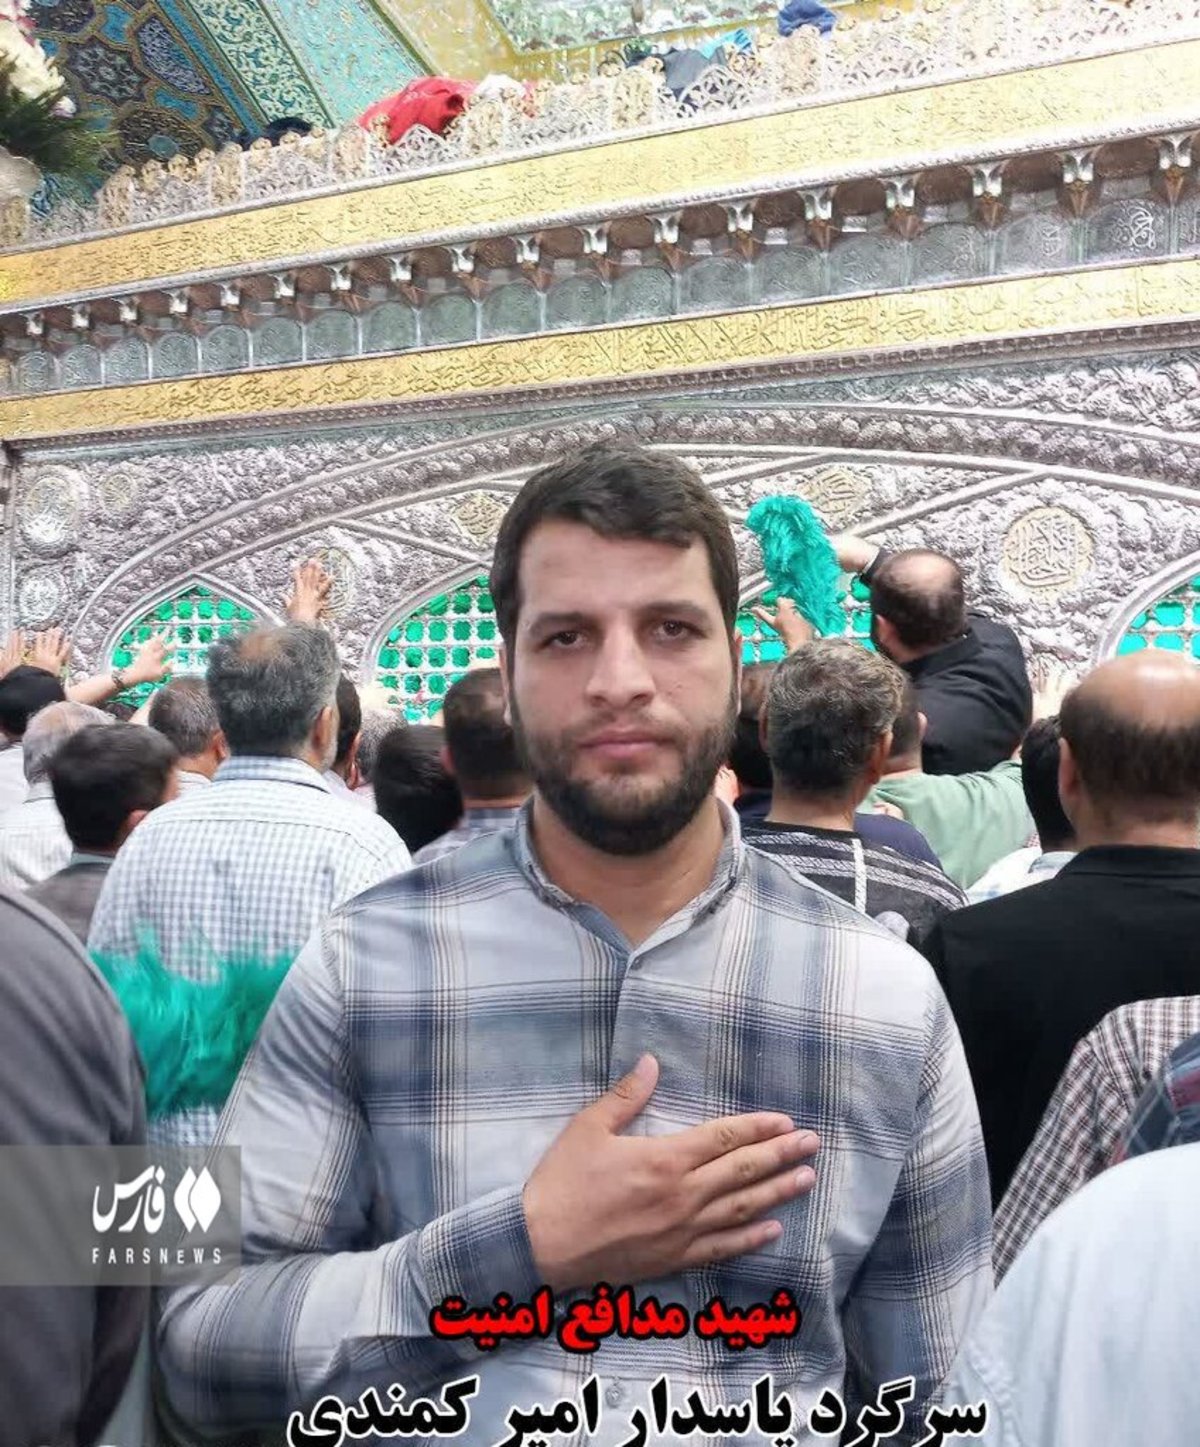 شهادت سرگرد پاسدار در تهران با پرتاب نارنجک دستی اغتشاشگران